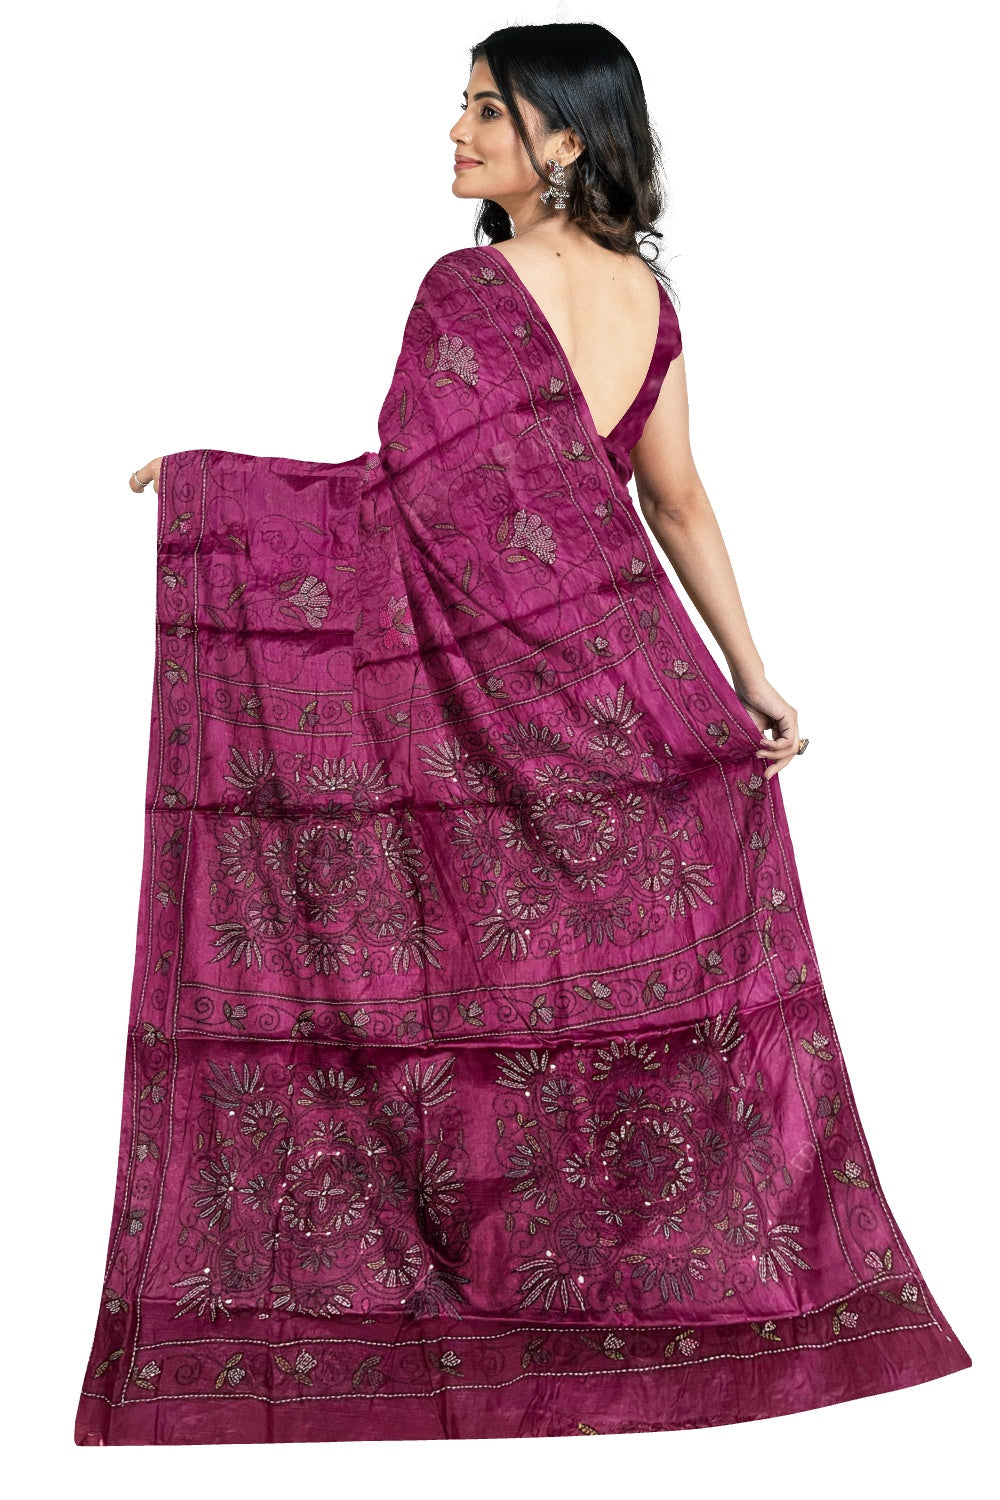 Southloom Kantha Thread Work Designer Wine Purple Saree